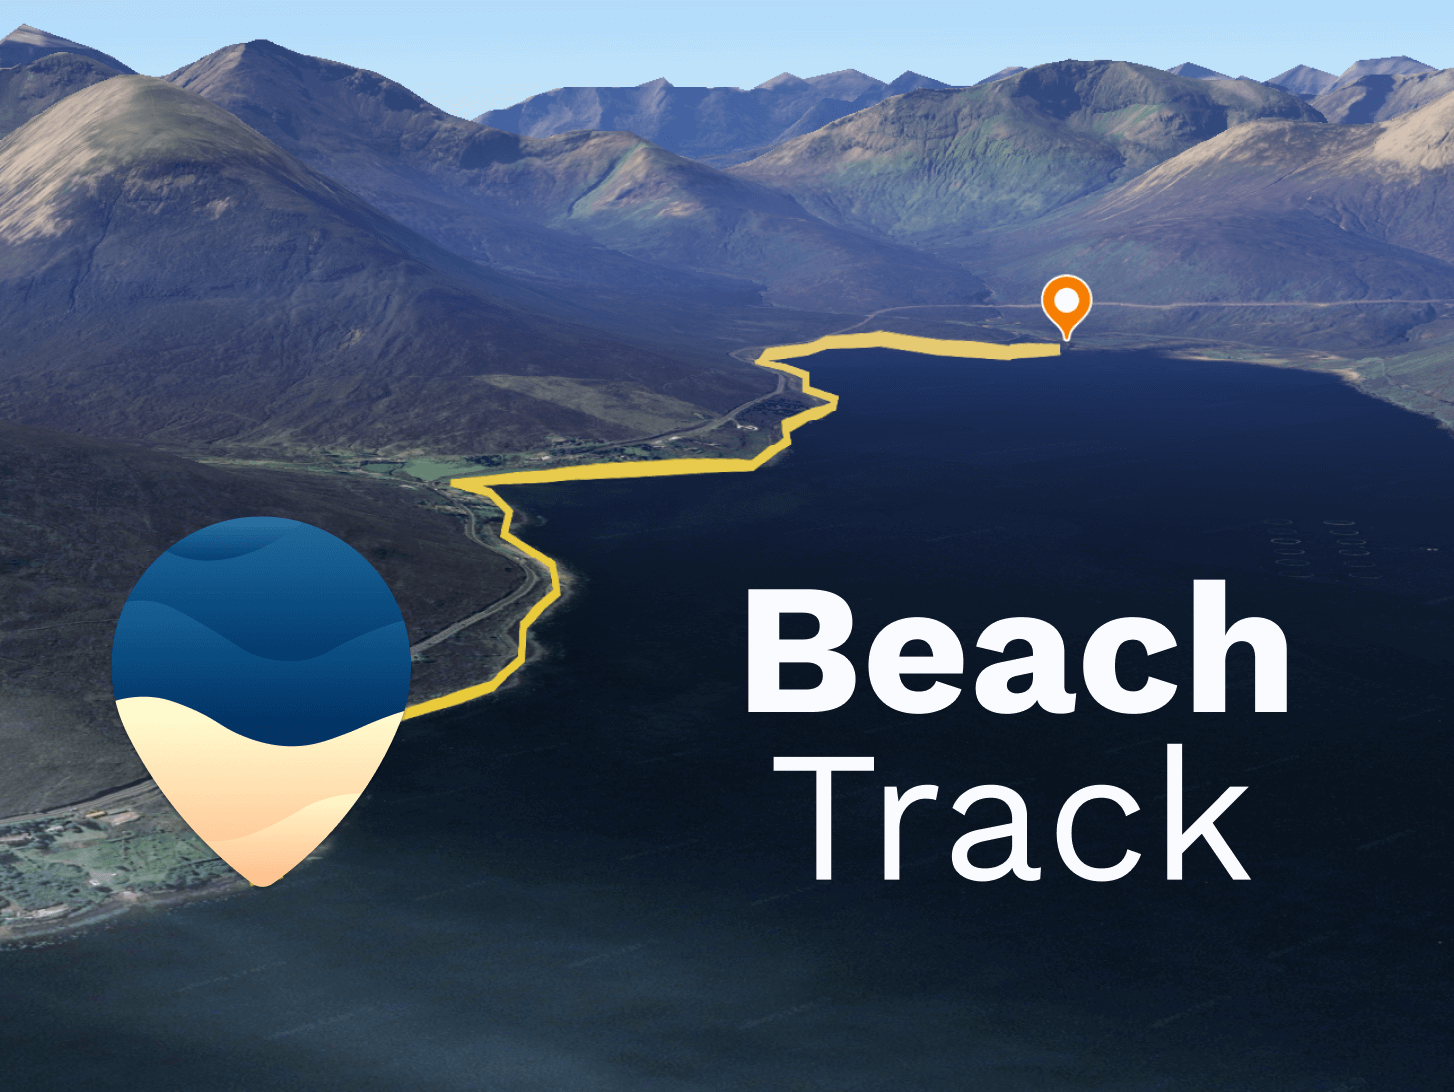 BeachTrack image